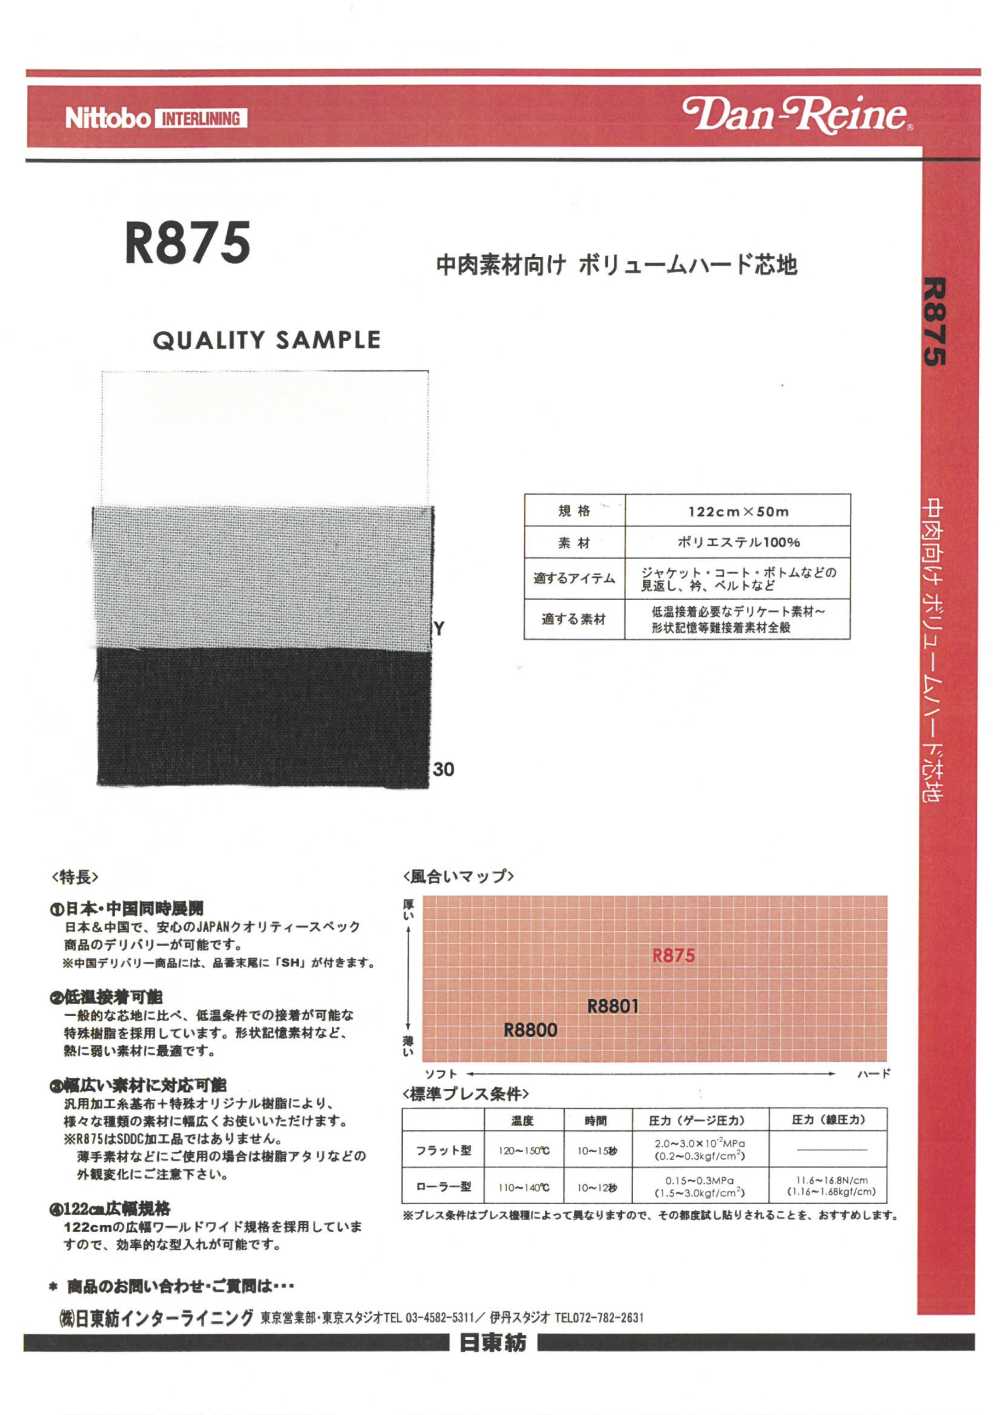 R875 Volume Hard Interlining For Medium Thickness Materials Nittobo